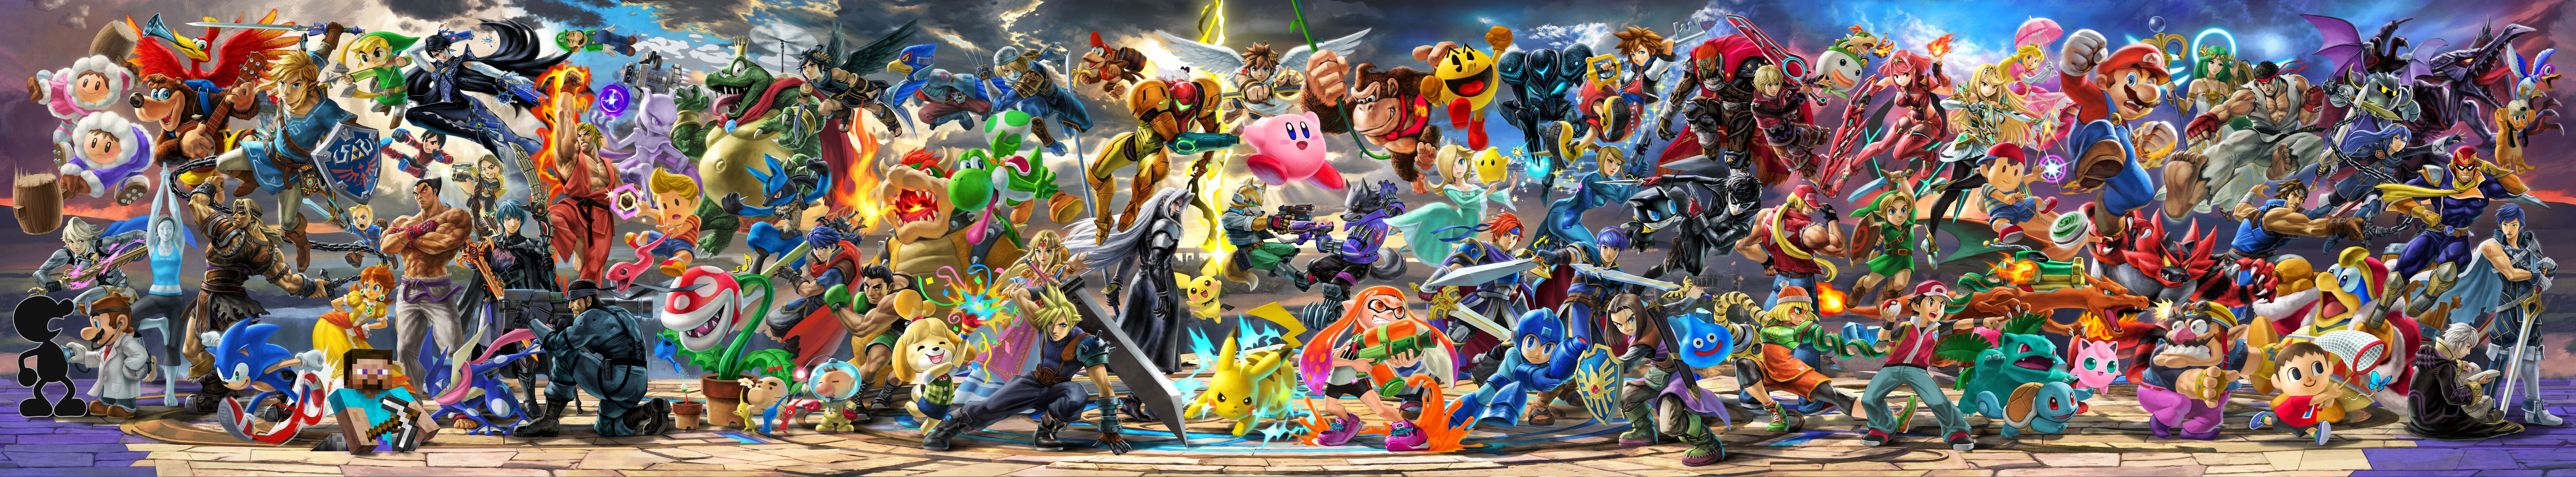 Скачать обои Super Smash Bros Ultimate на телефон бесплатно